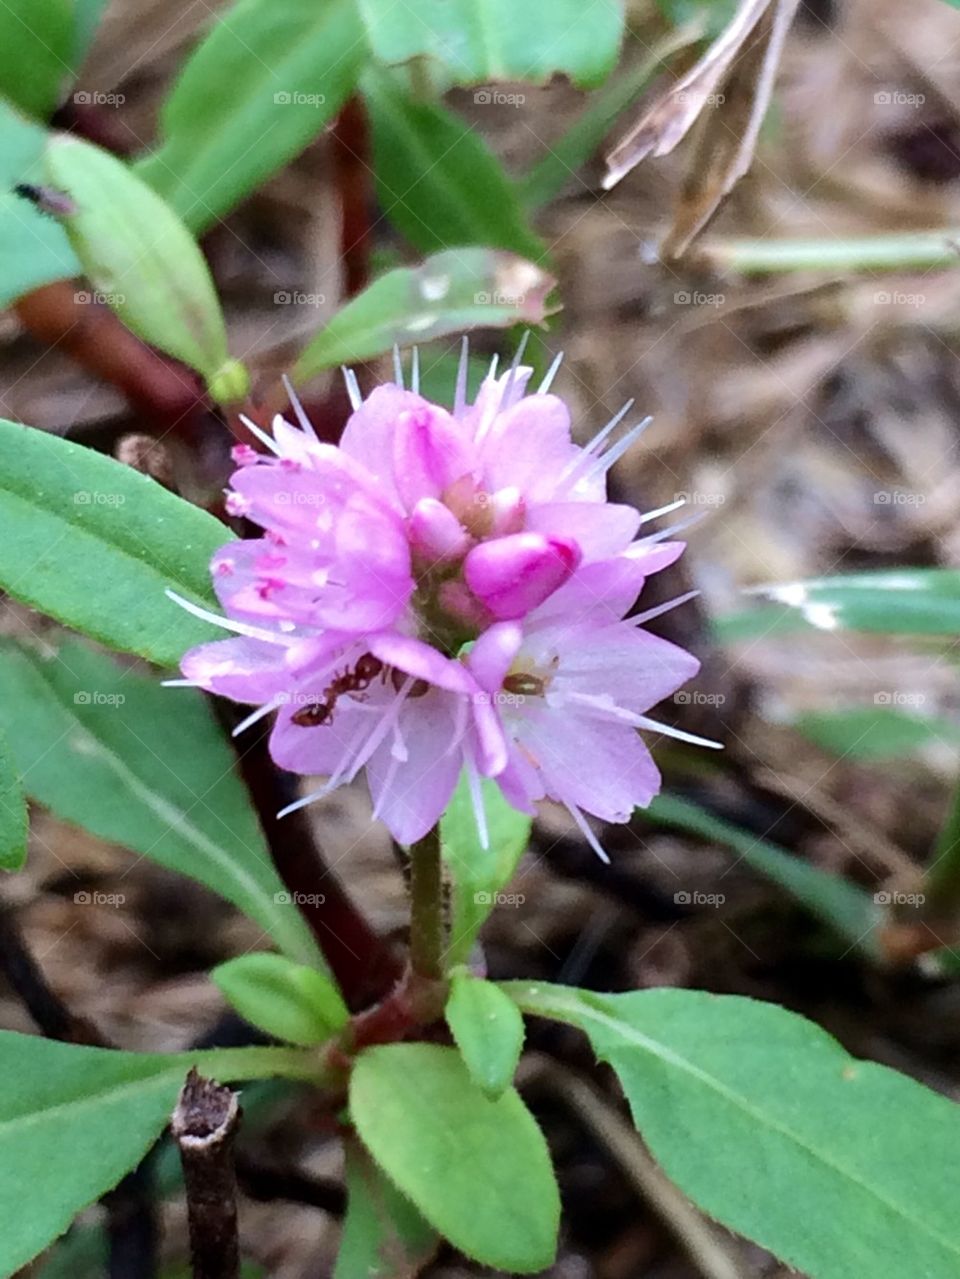 Purple weed flower